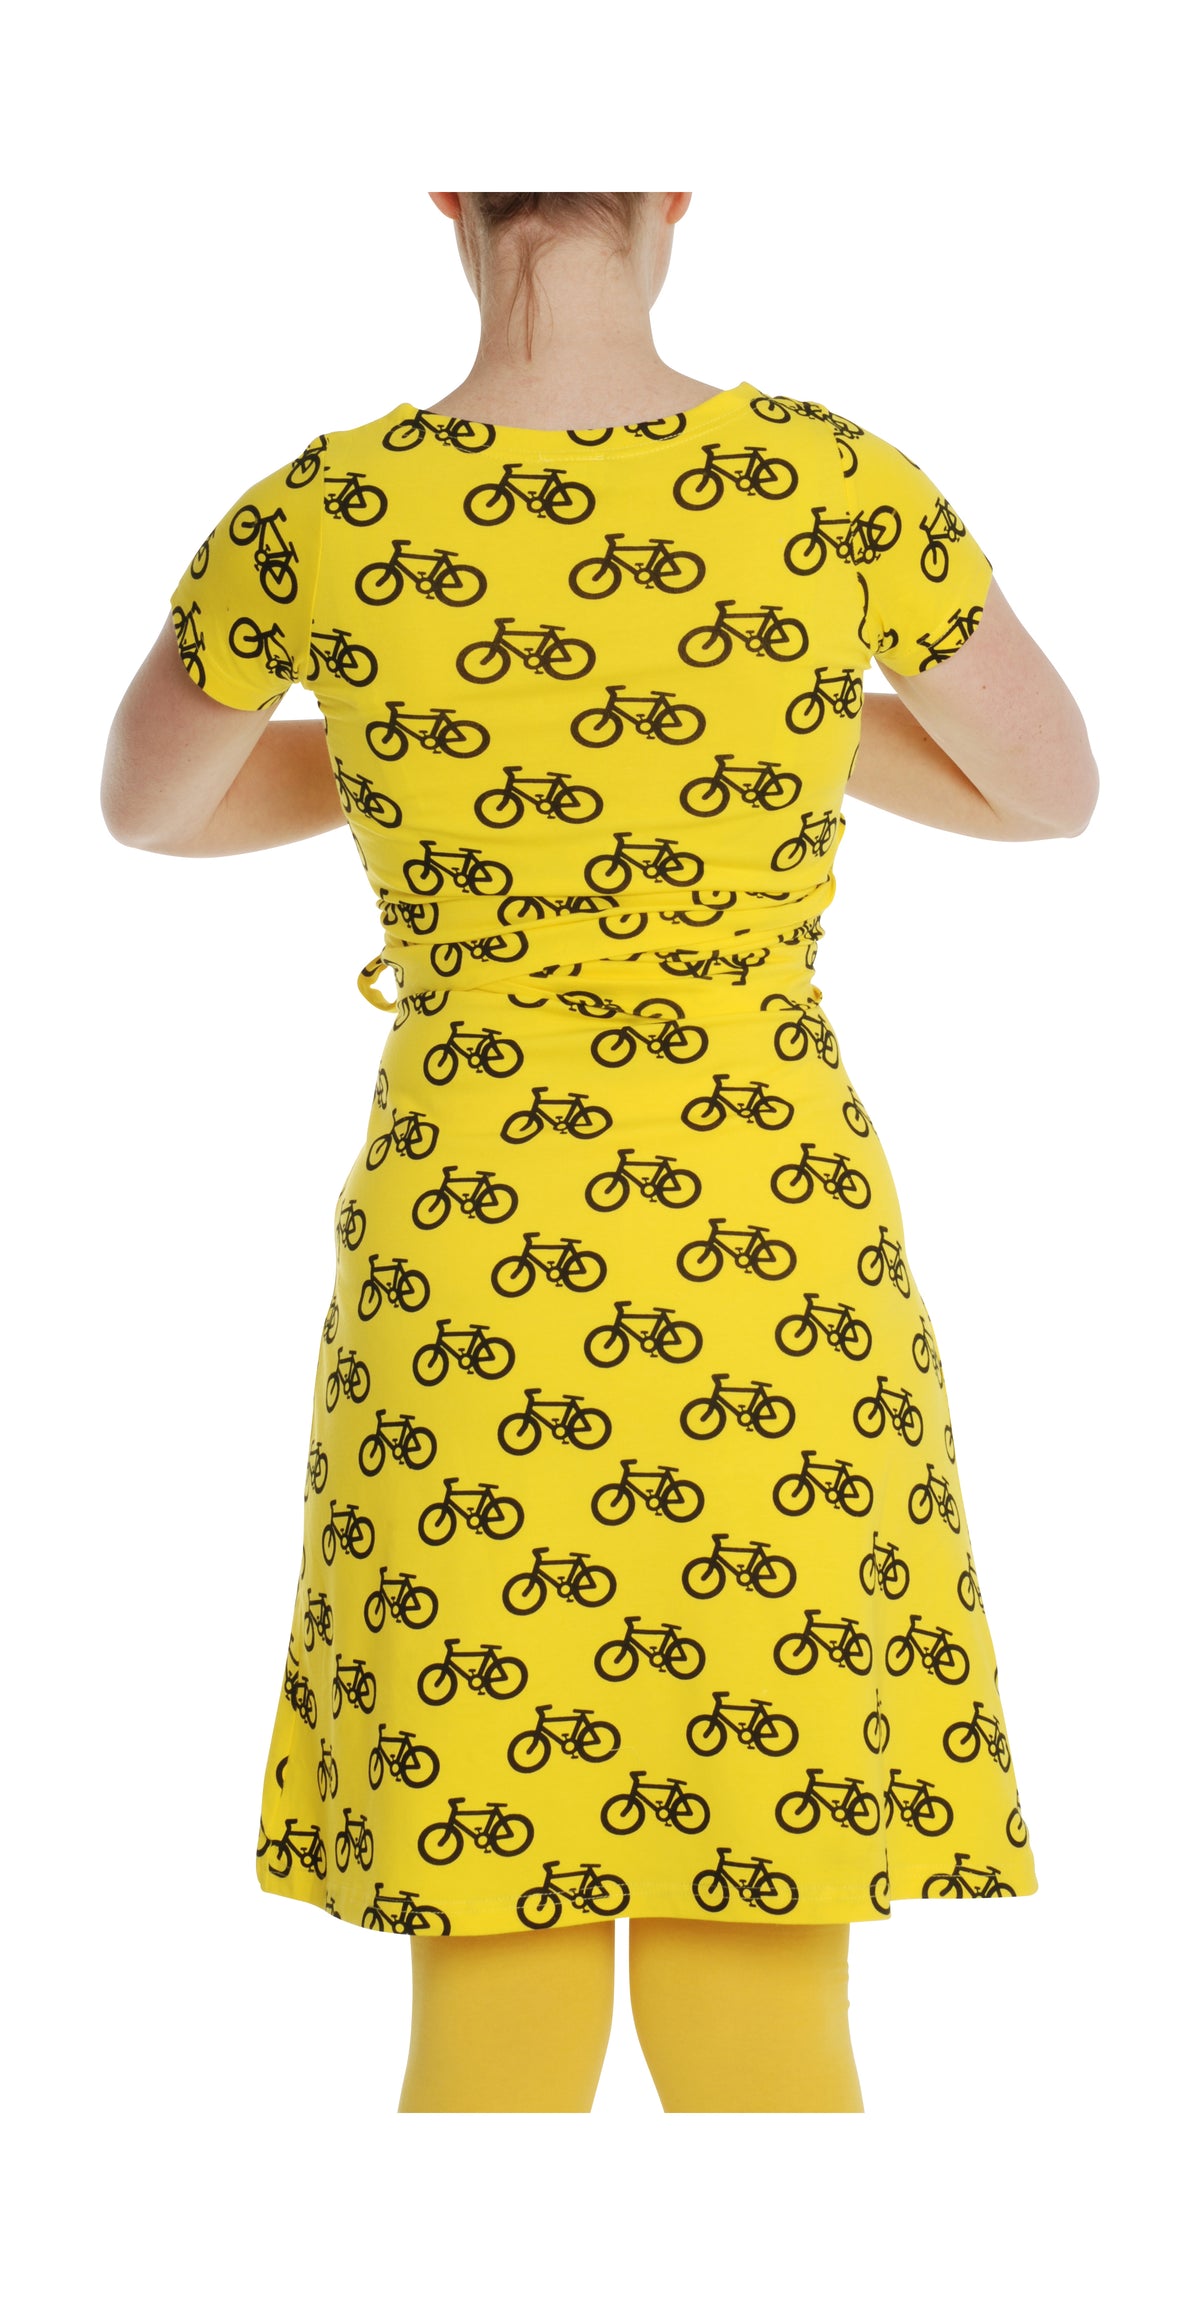 More Than A Fling Wrap Dress Bike Yellow - Overslag Jurk Geel Fietsen